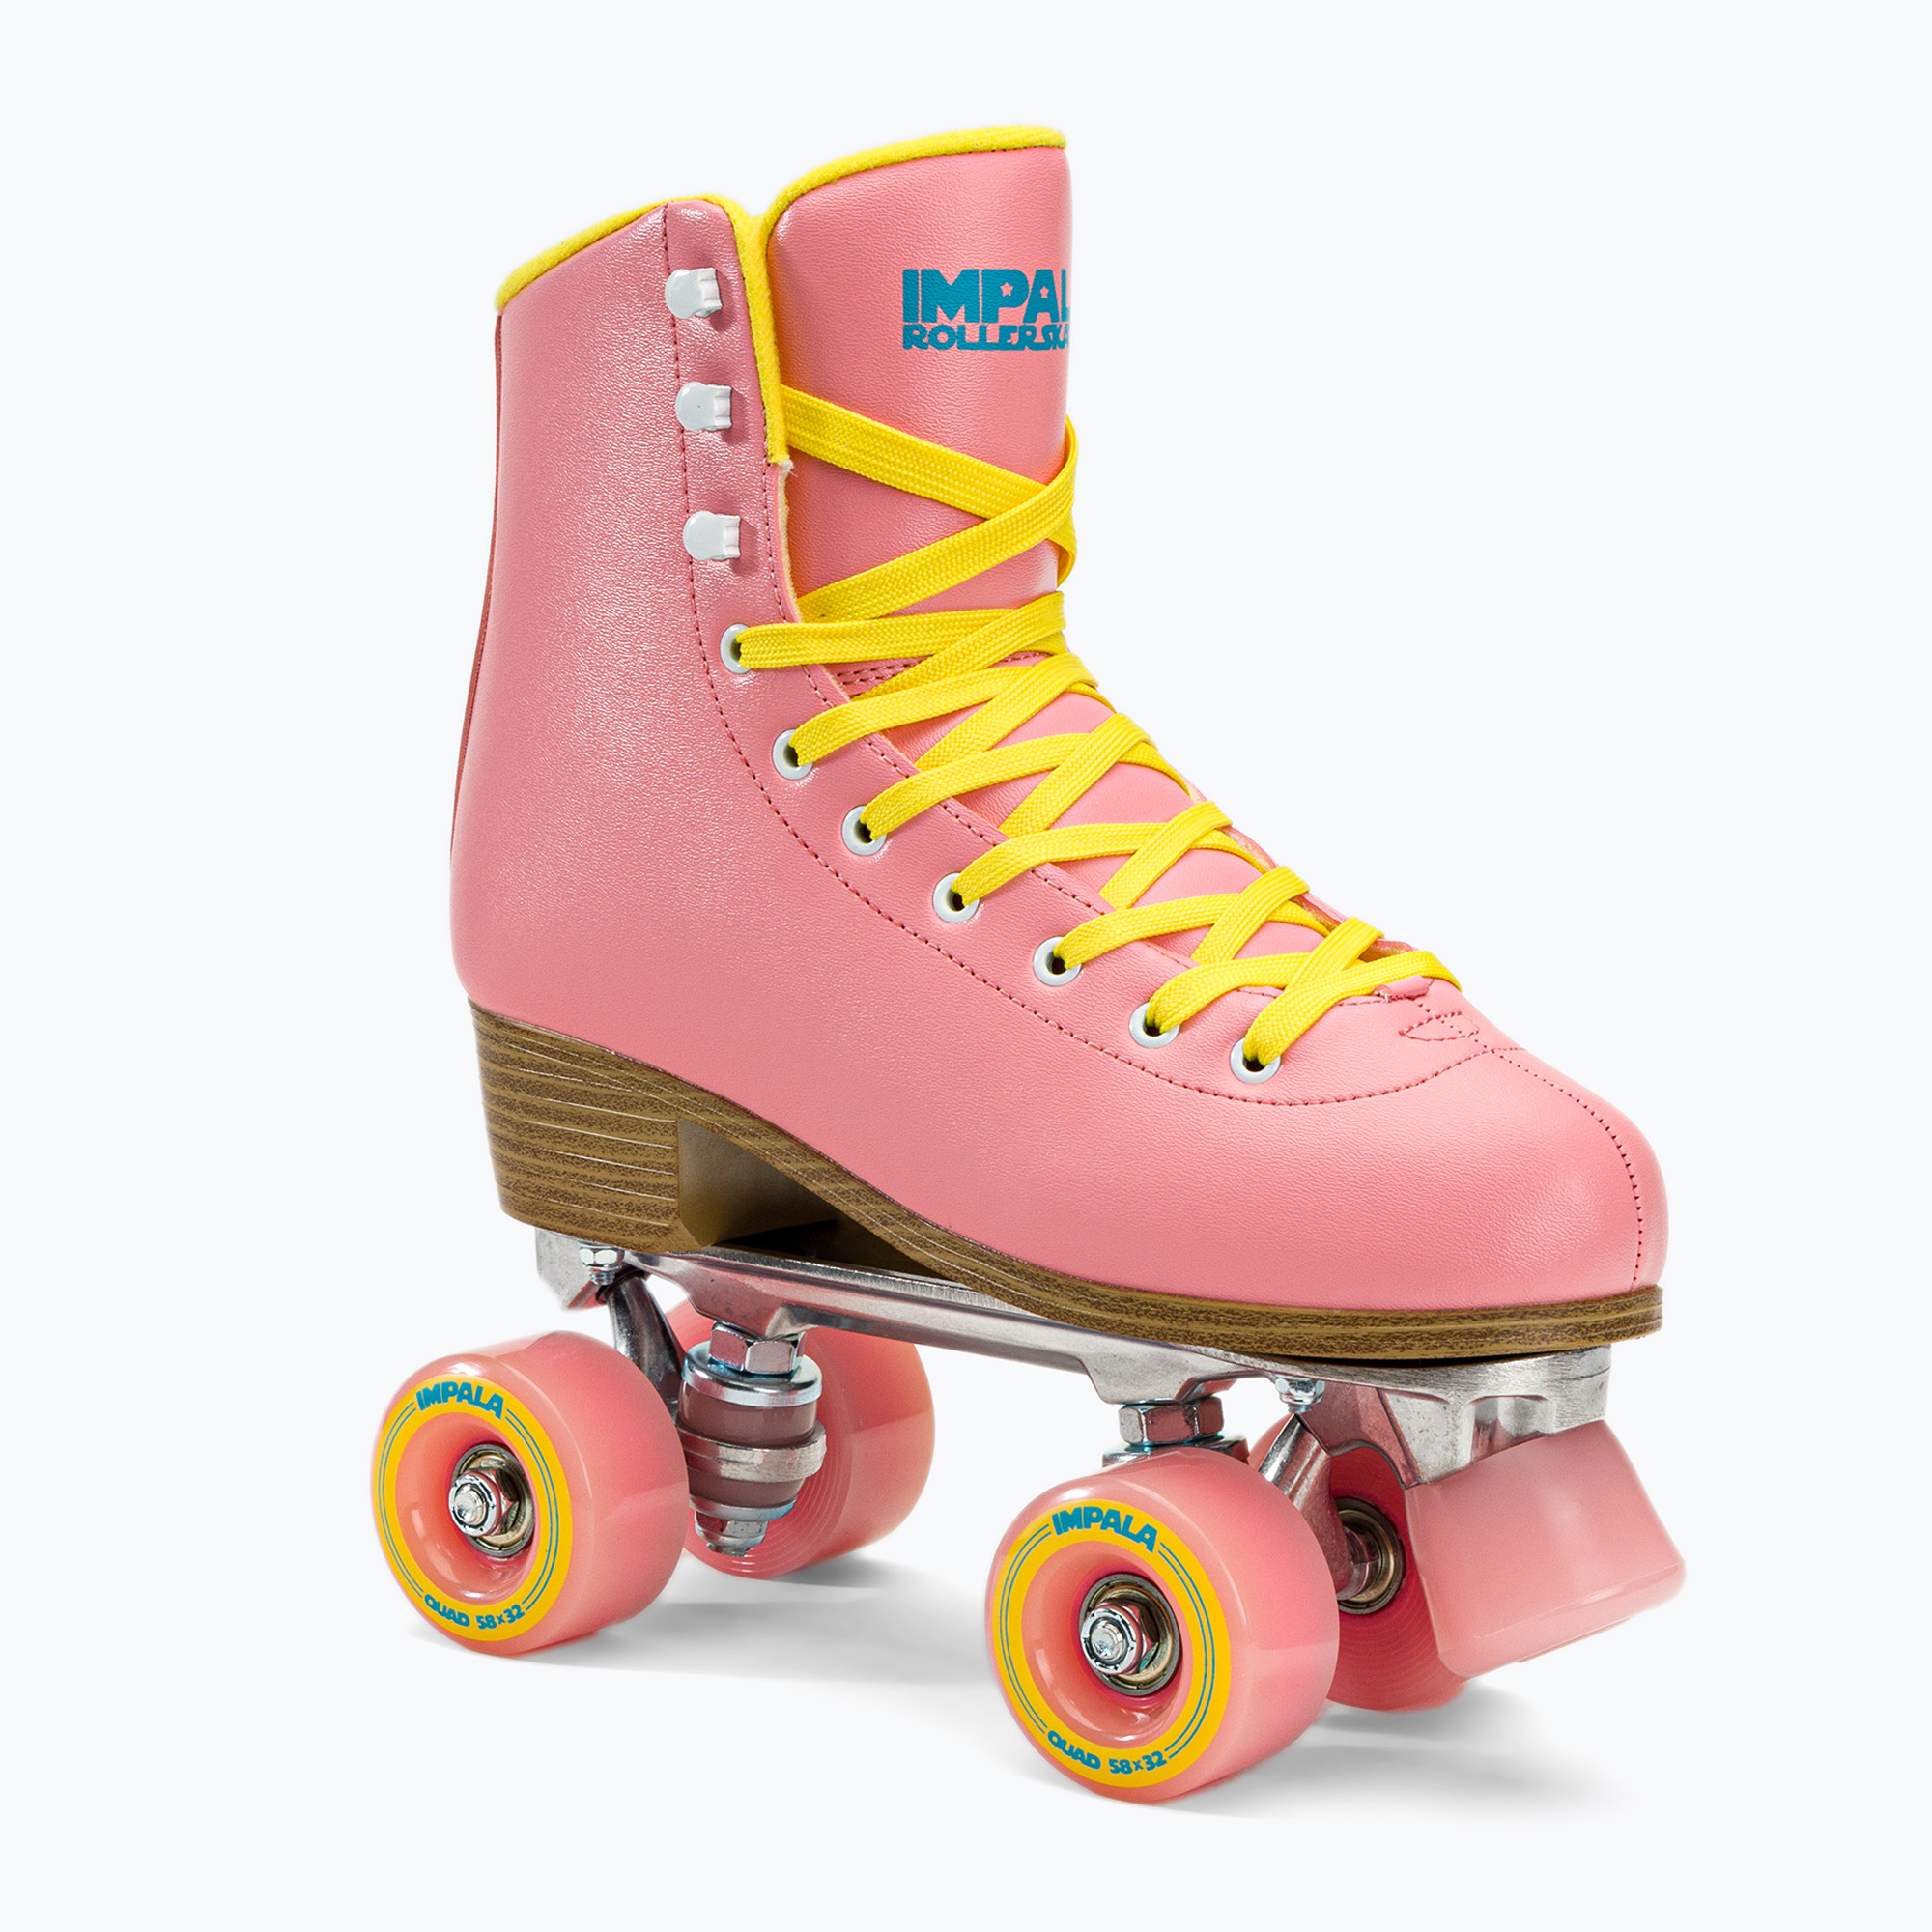 Dámske korčule IMPALA Quad Skates ružovo-žlté